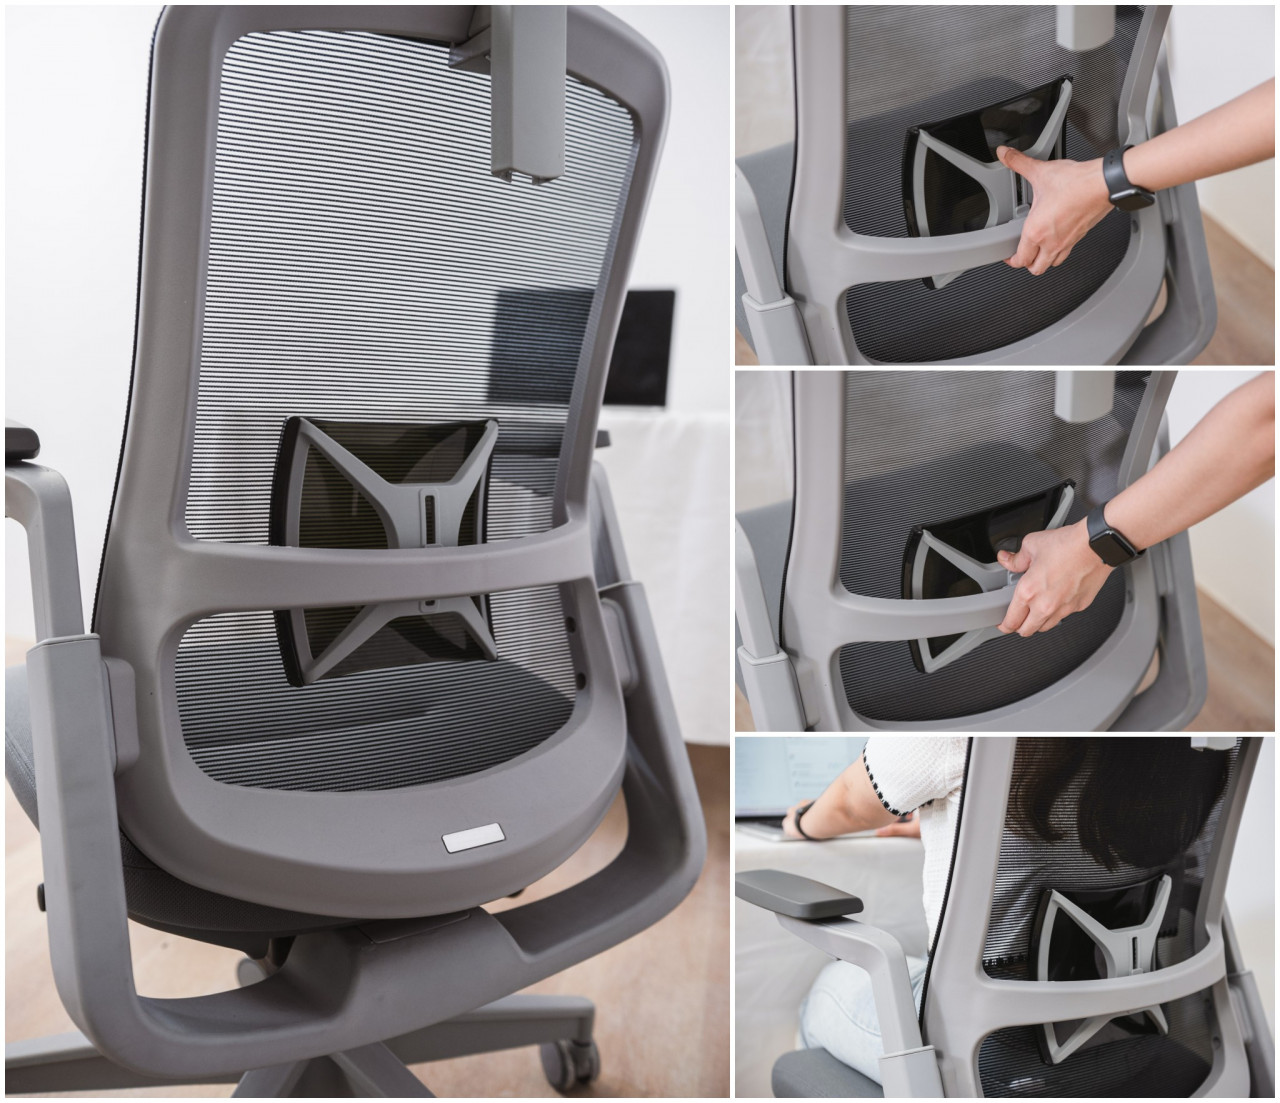 รีวิว Lumbar Support เก้าอี้สุขภาพ Libra จาก Workscape